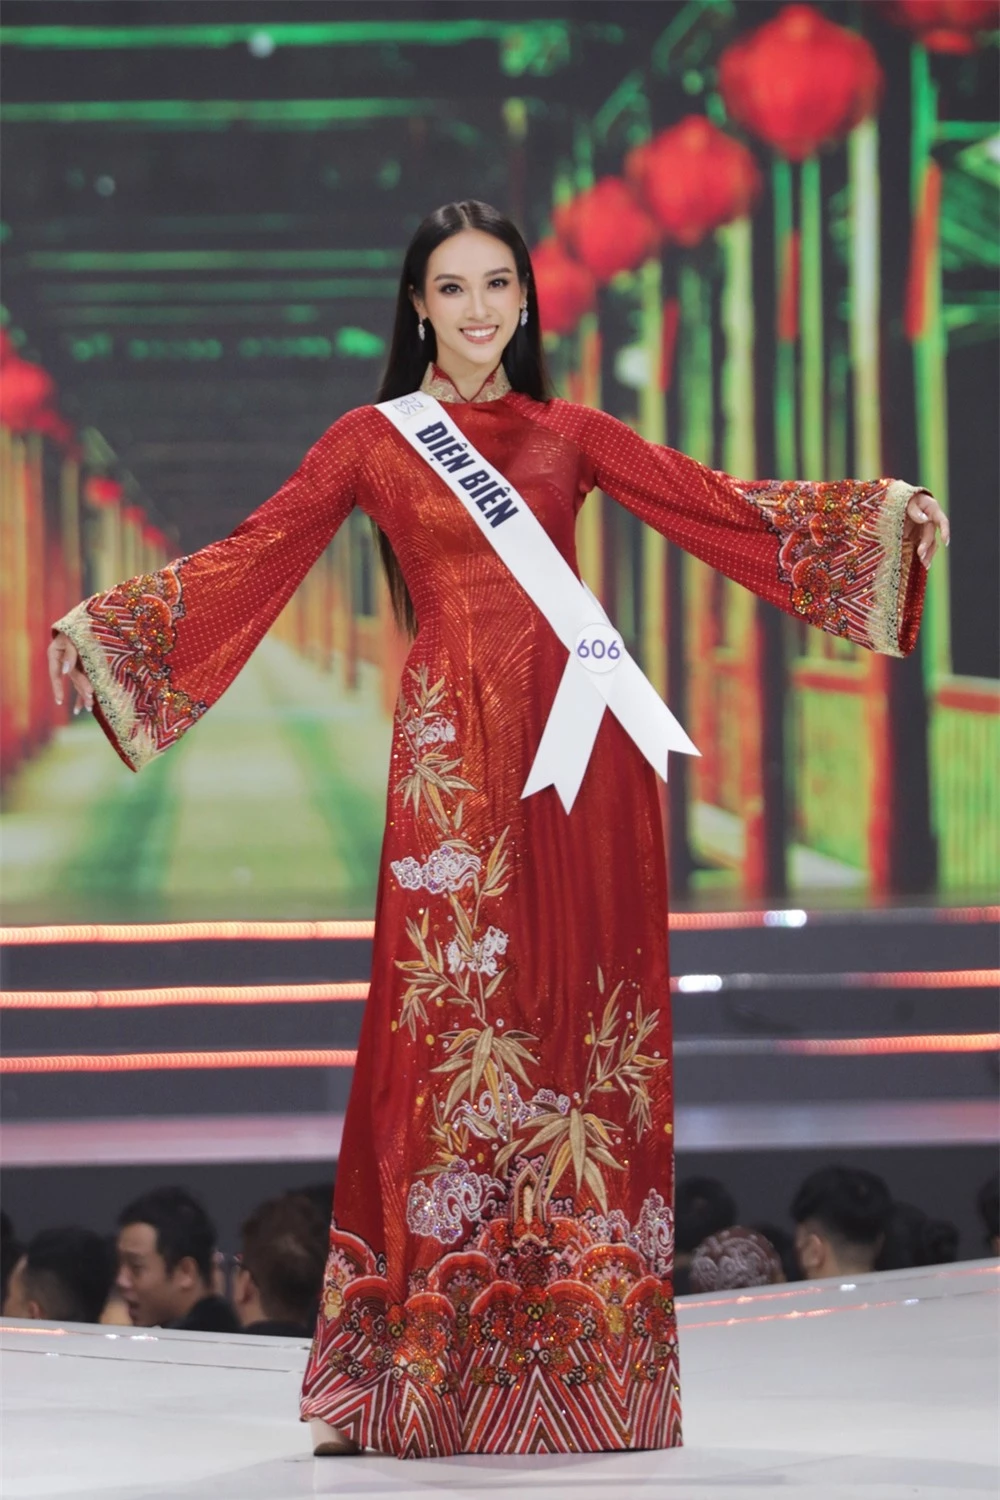 Bán kết Hoa hậu Hoàn vũ Việt Nam 2022: Loạt ứng viên cùng khoe vẻ nóng bỏng - Ảnh 9.